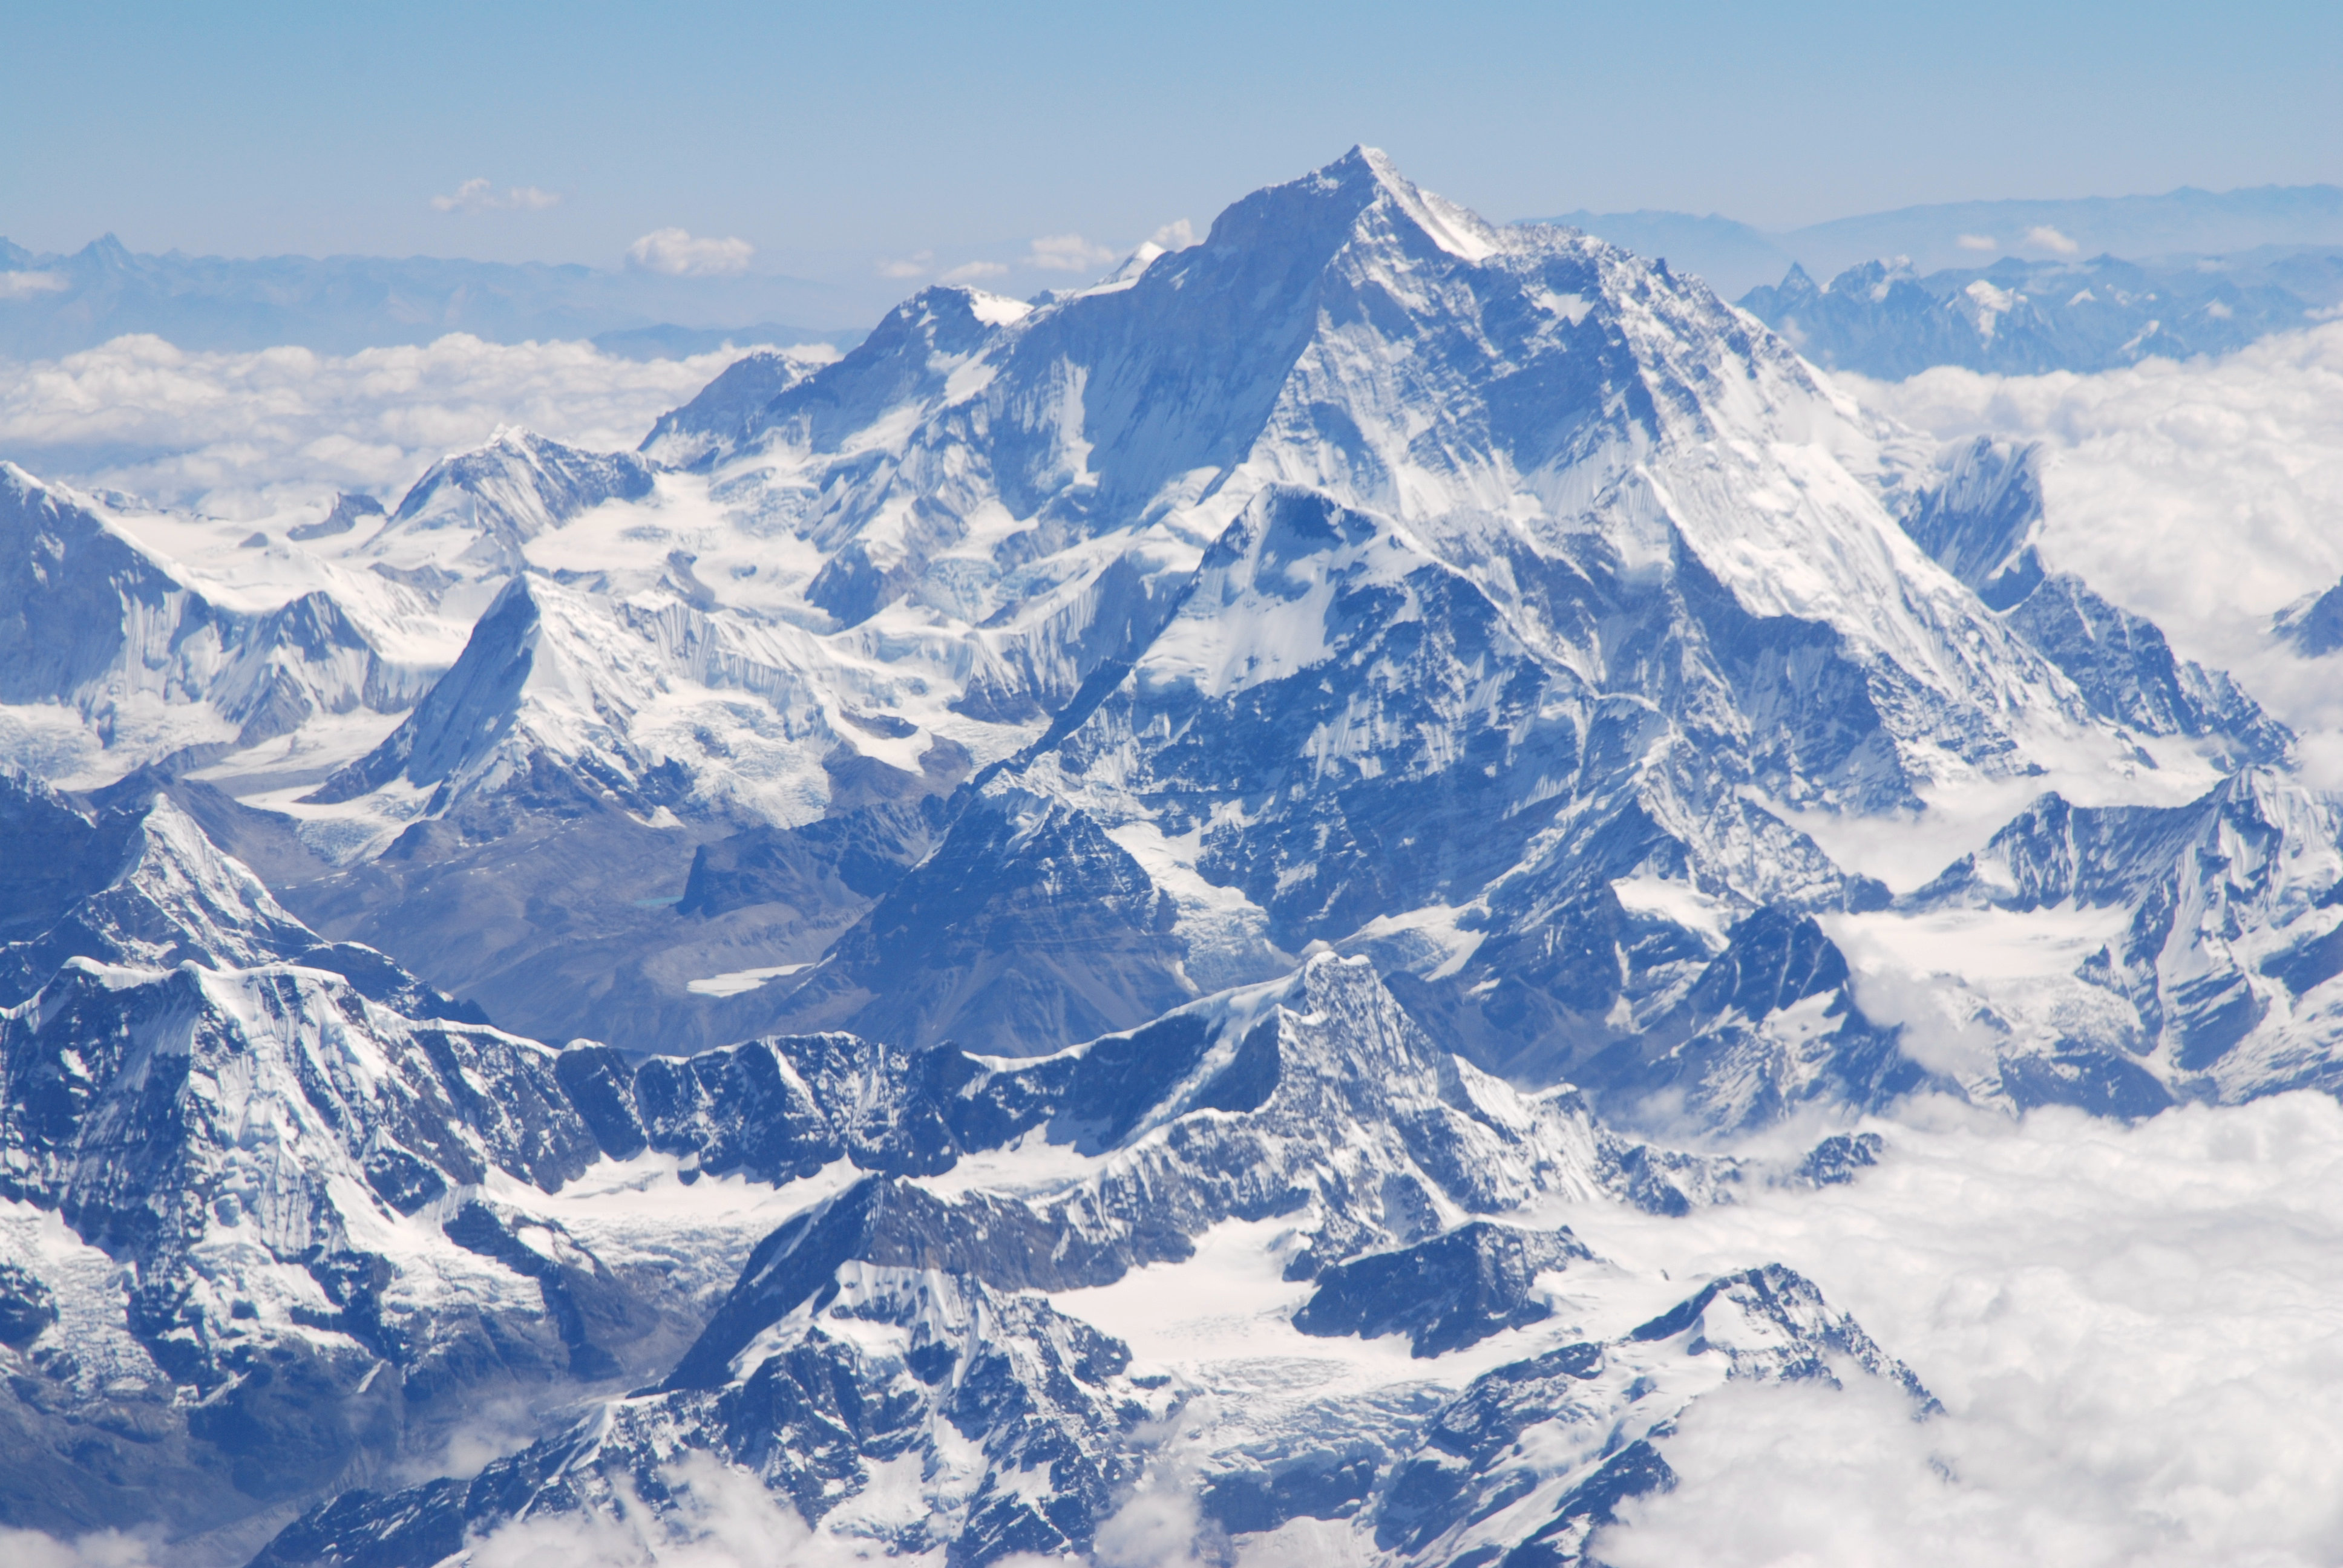 Более высокая гора. Гора Джомолунгма Эверест. Эверест (Джомолунгма), Китай. Джомолунгма (Гималаи) - 8848. Сагарматха Джомолунгма или Эверест.